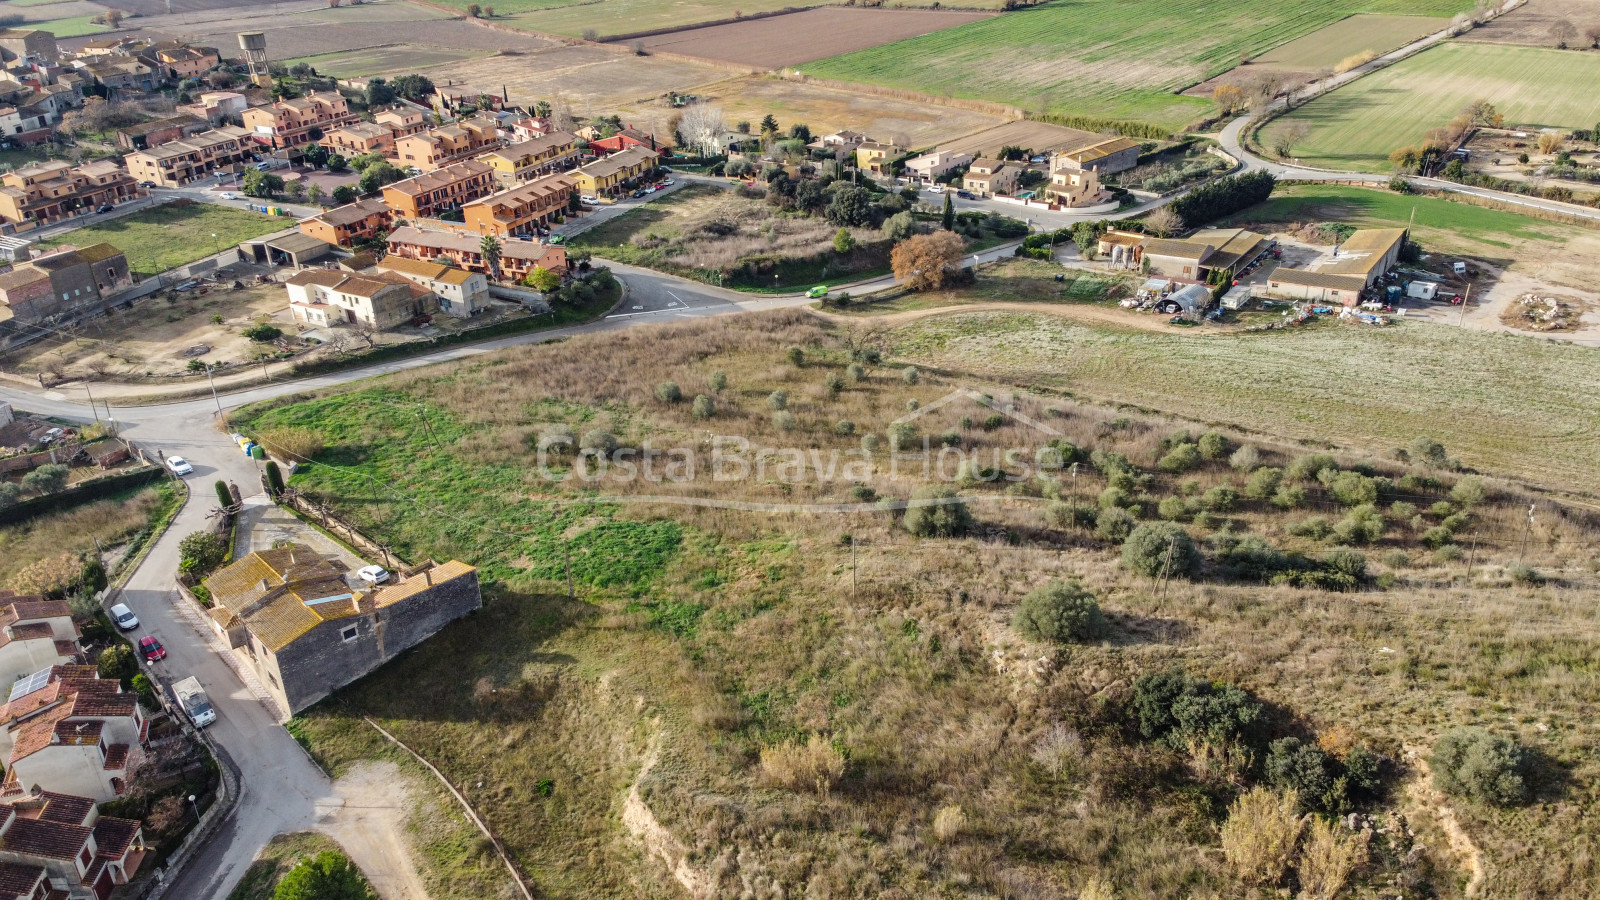 Terreno edificable en venta en Bellcaire d'Empordà con varias opciones de desarrollo